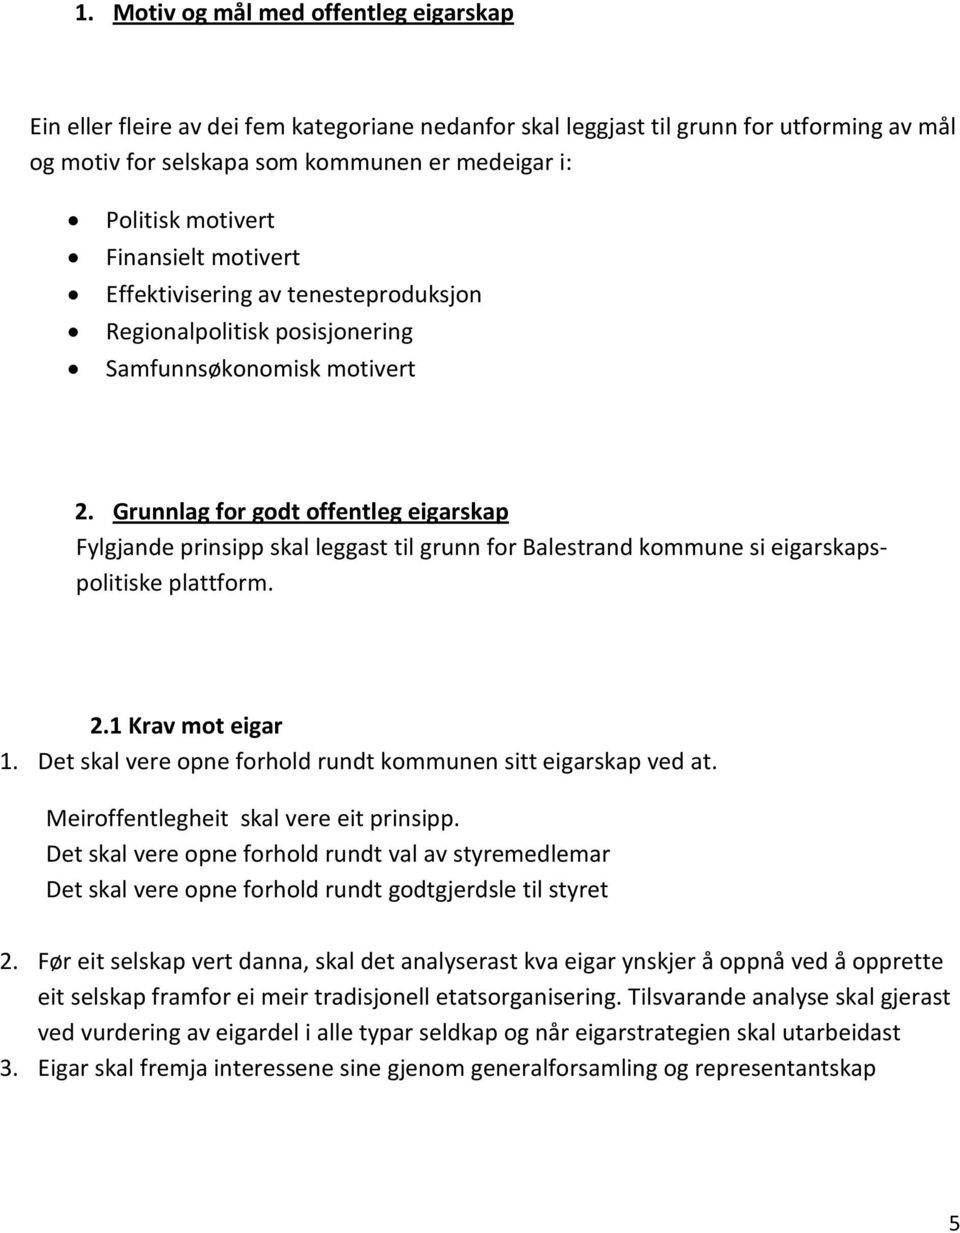 Grunnlag for godt offentleg eigarskap Fylgjande prinsipp skal leggast til grunn for Balestrand kommune si eigarskapspolitiske plattform. 2.1 Krav mot eigar 1.